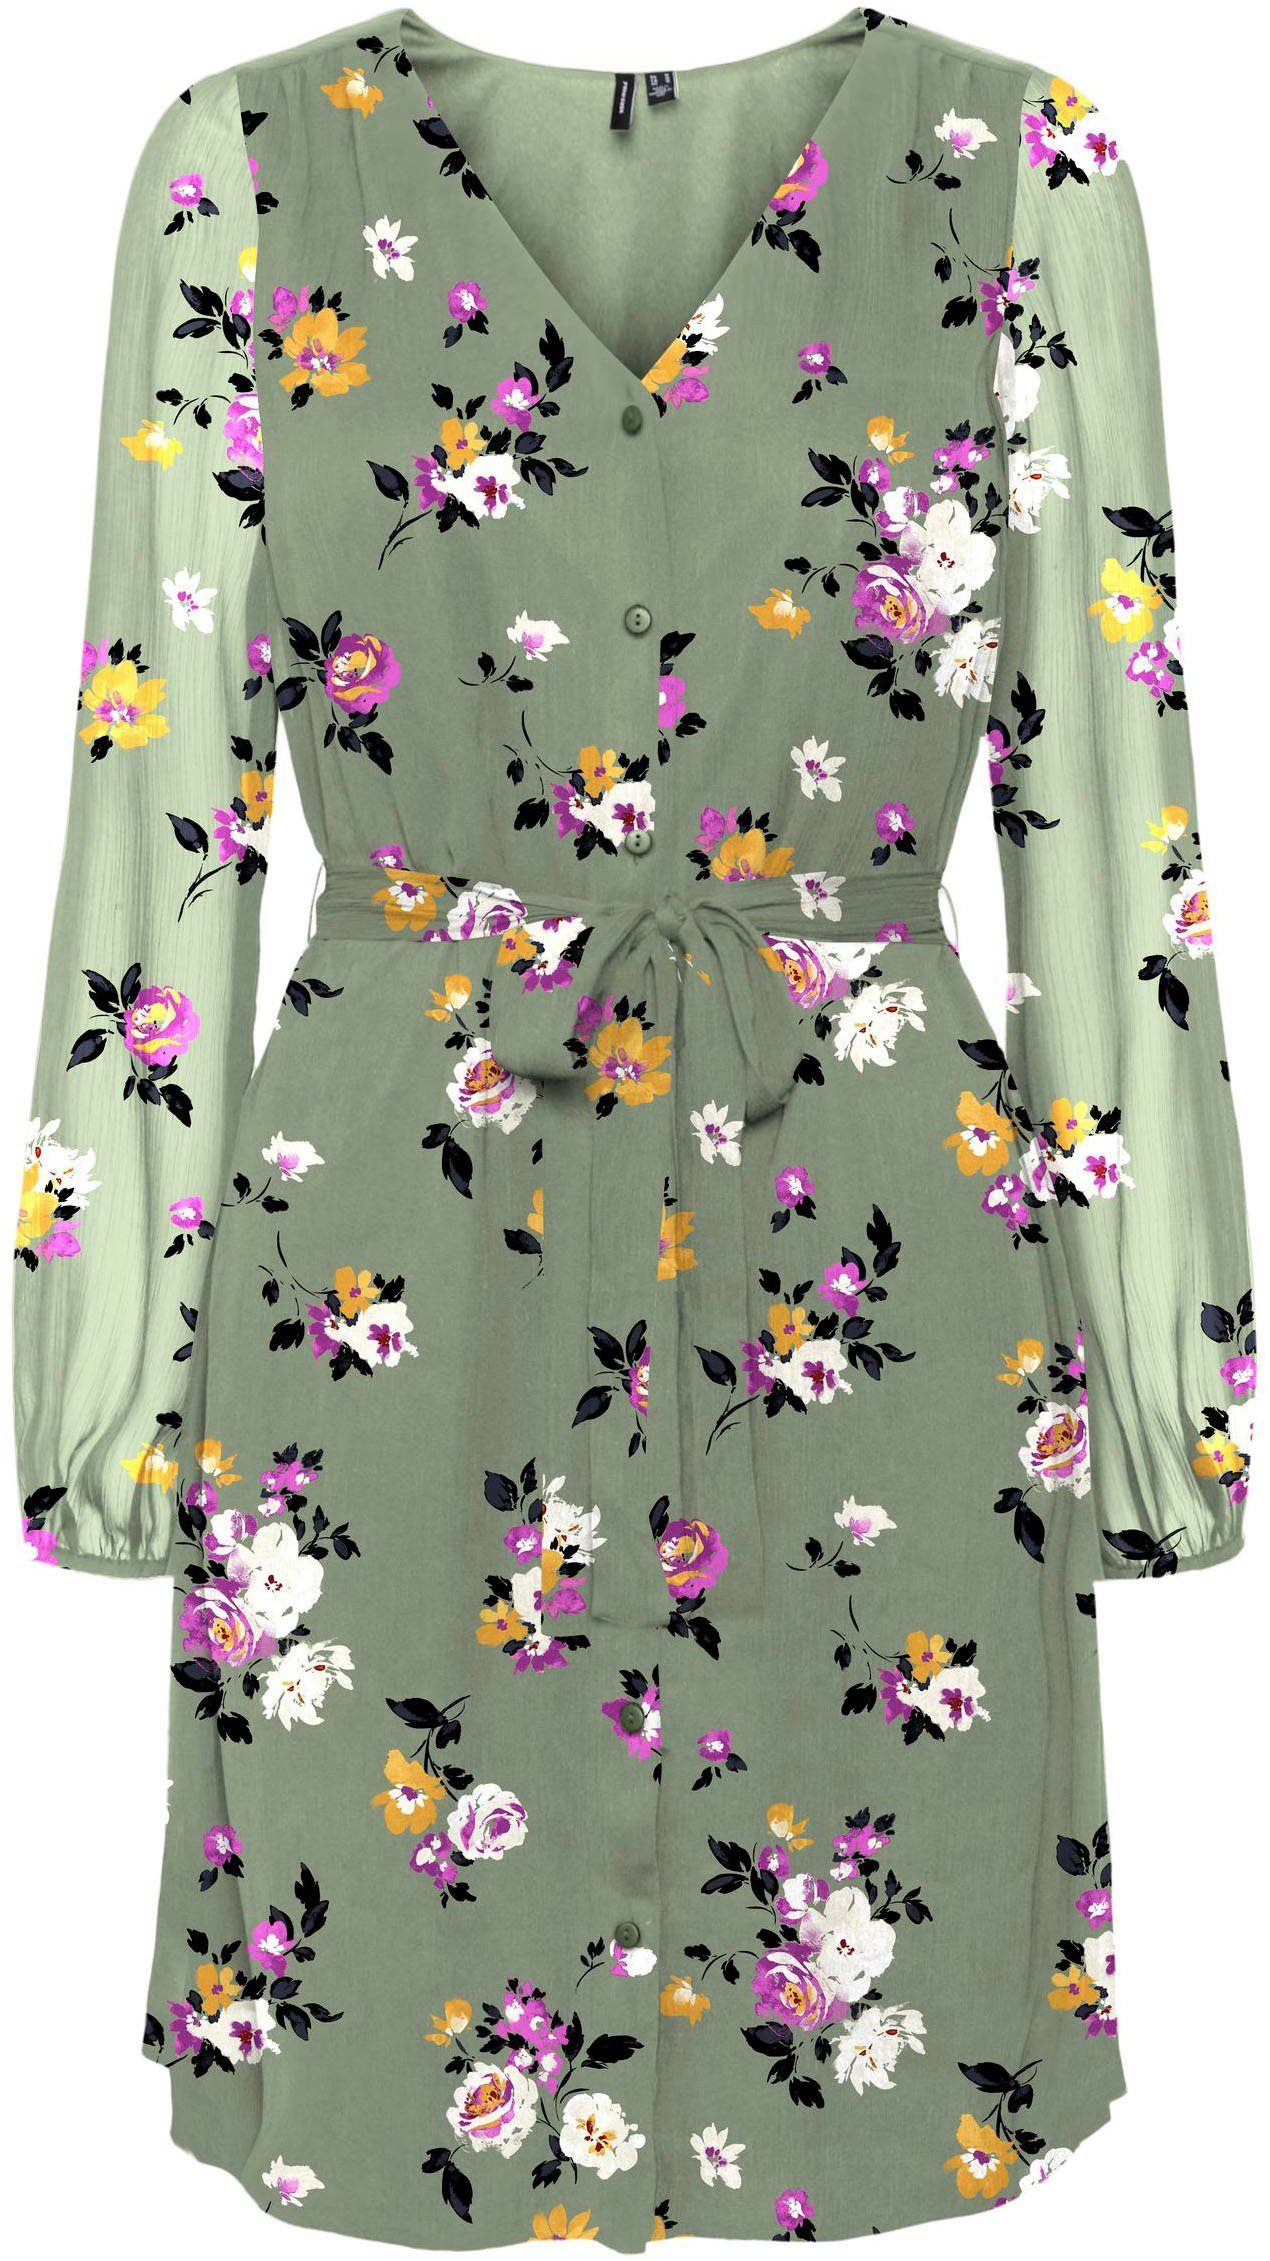 Mode Jurken Chiffon jurken Mango Chiffon jurk olijfgroen bloemenprint casual uitstraling 